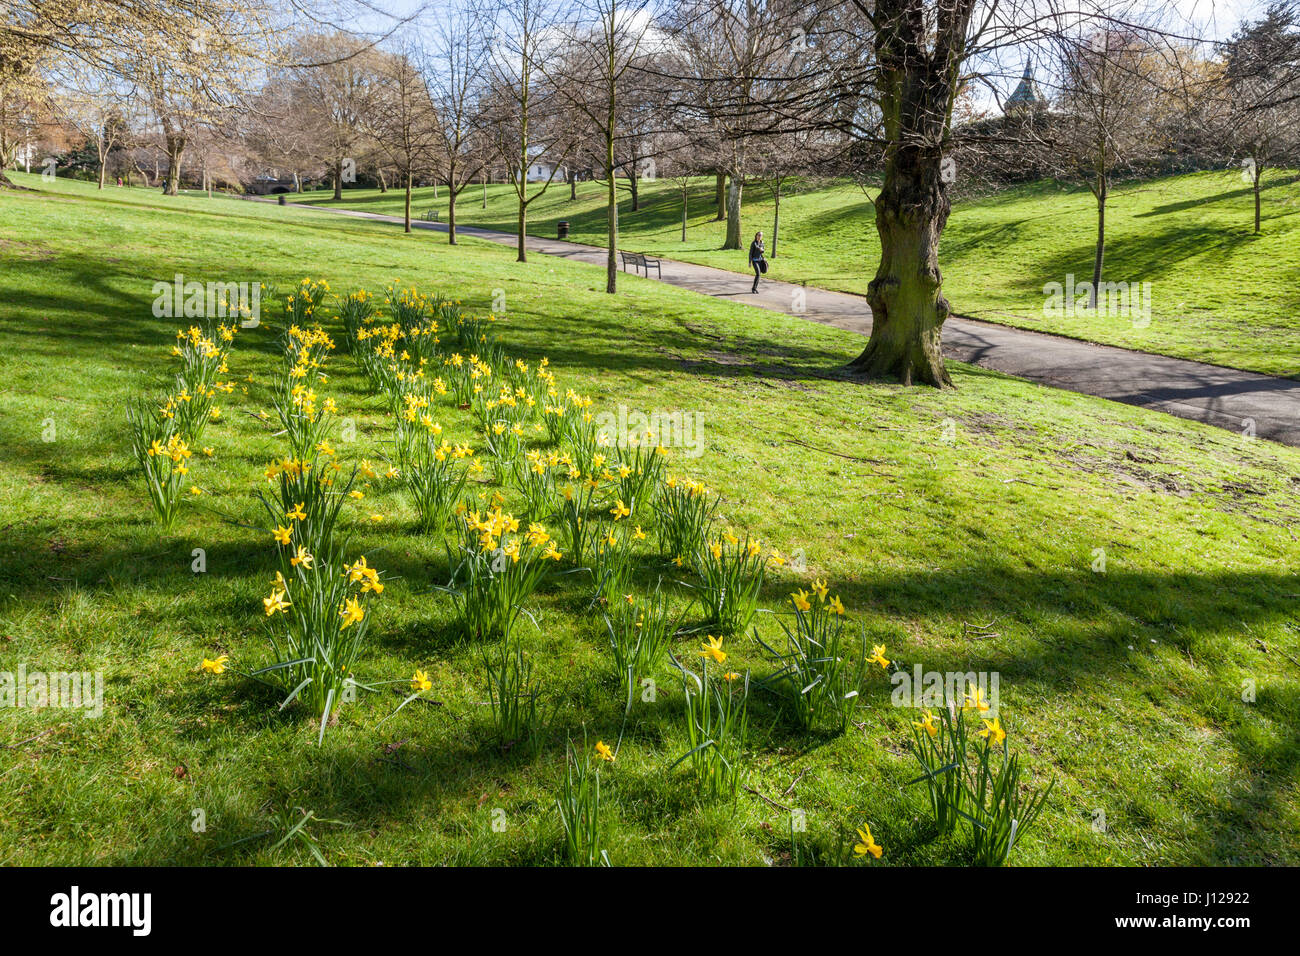 Frühling Blumen. Narzissen in einem Park an einem sonnigen Tag im Frühjahr, das Arboretum, Nottingham, England, Großbritannien Stockfoto